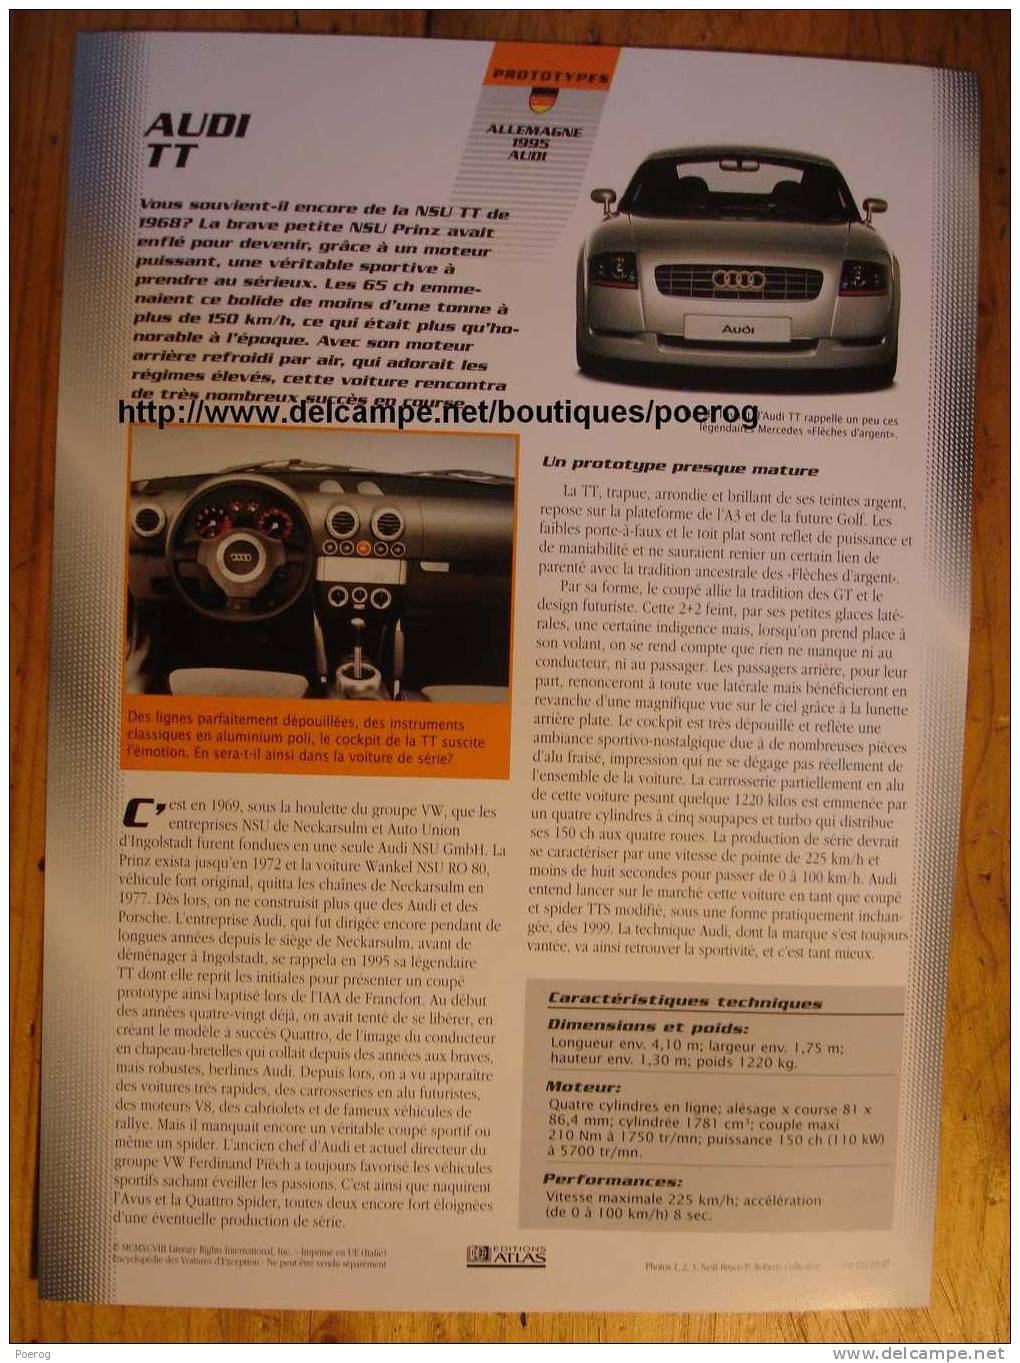 AUDI TT - FICHE VOITURE GRAND FORMAT (A4) - 1998 - Auto Automobile Automobiles Voitures Car Cars - Cars